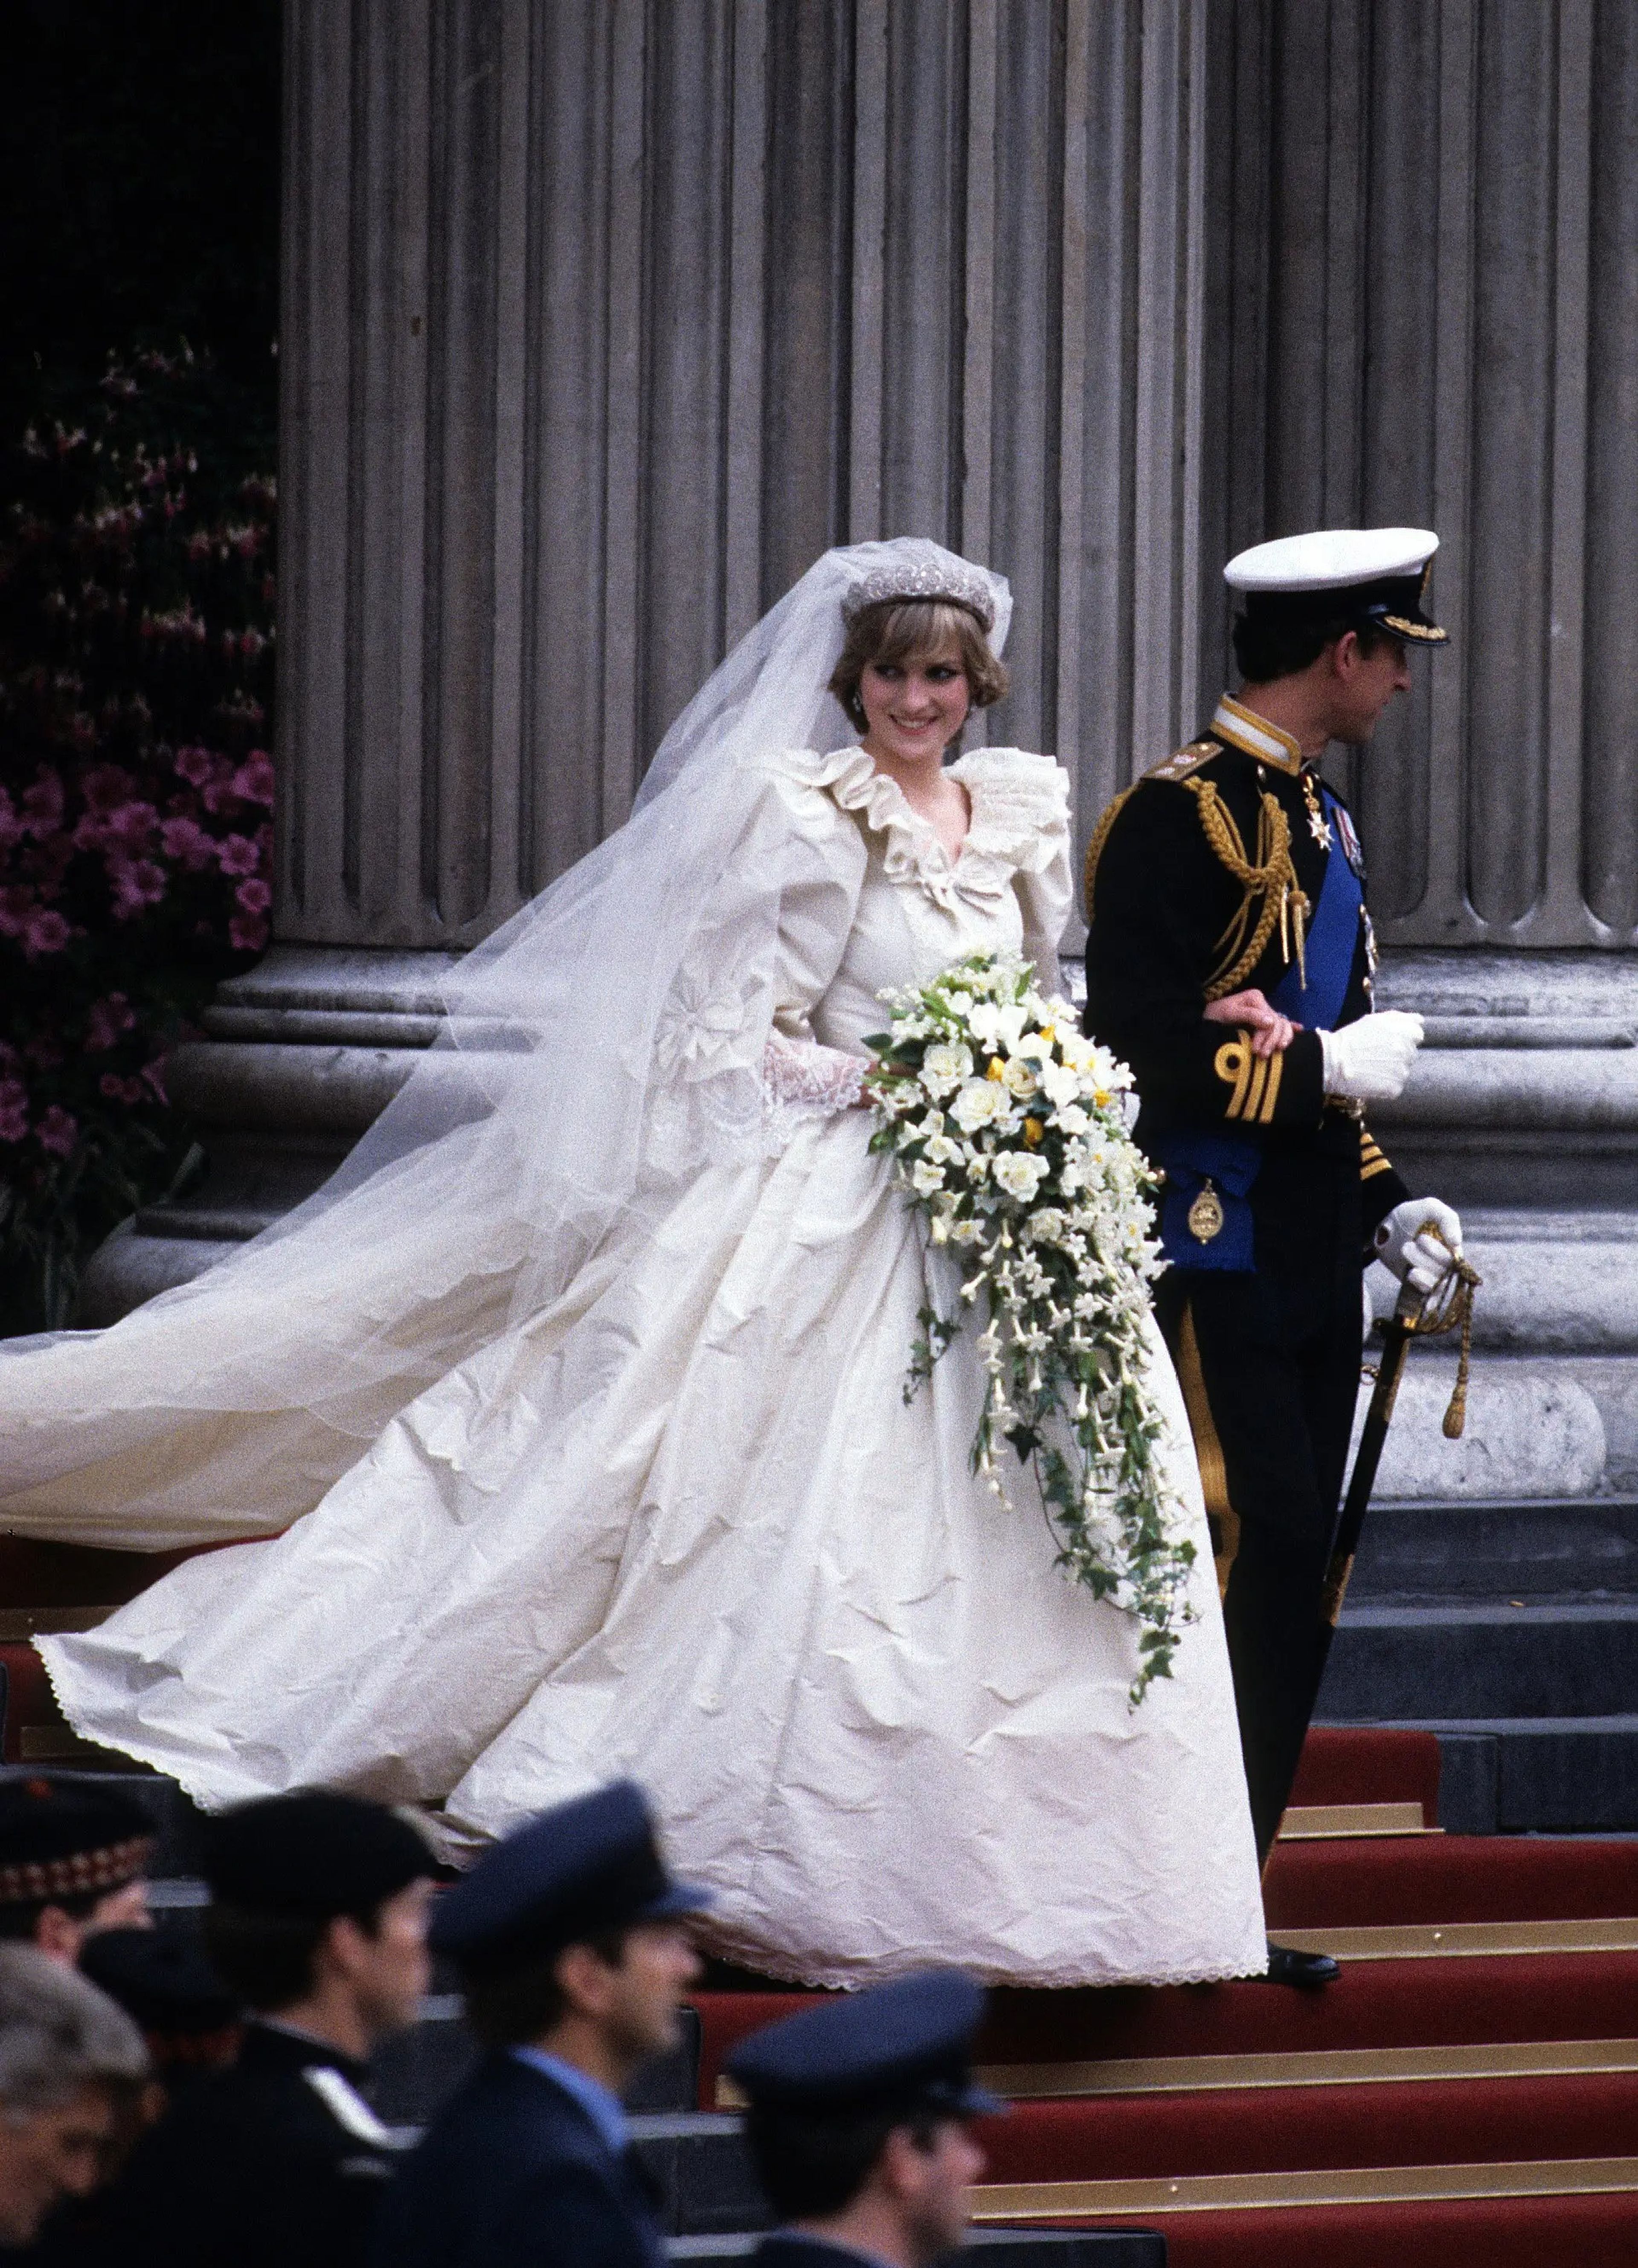 El vestido de novia de la princesa Diana estaba totalmente arrugado.